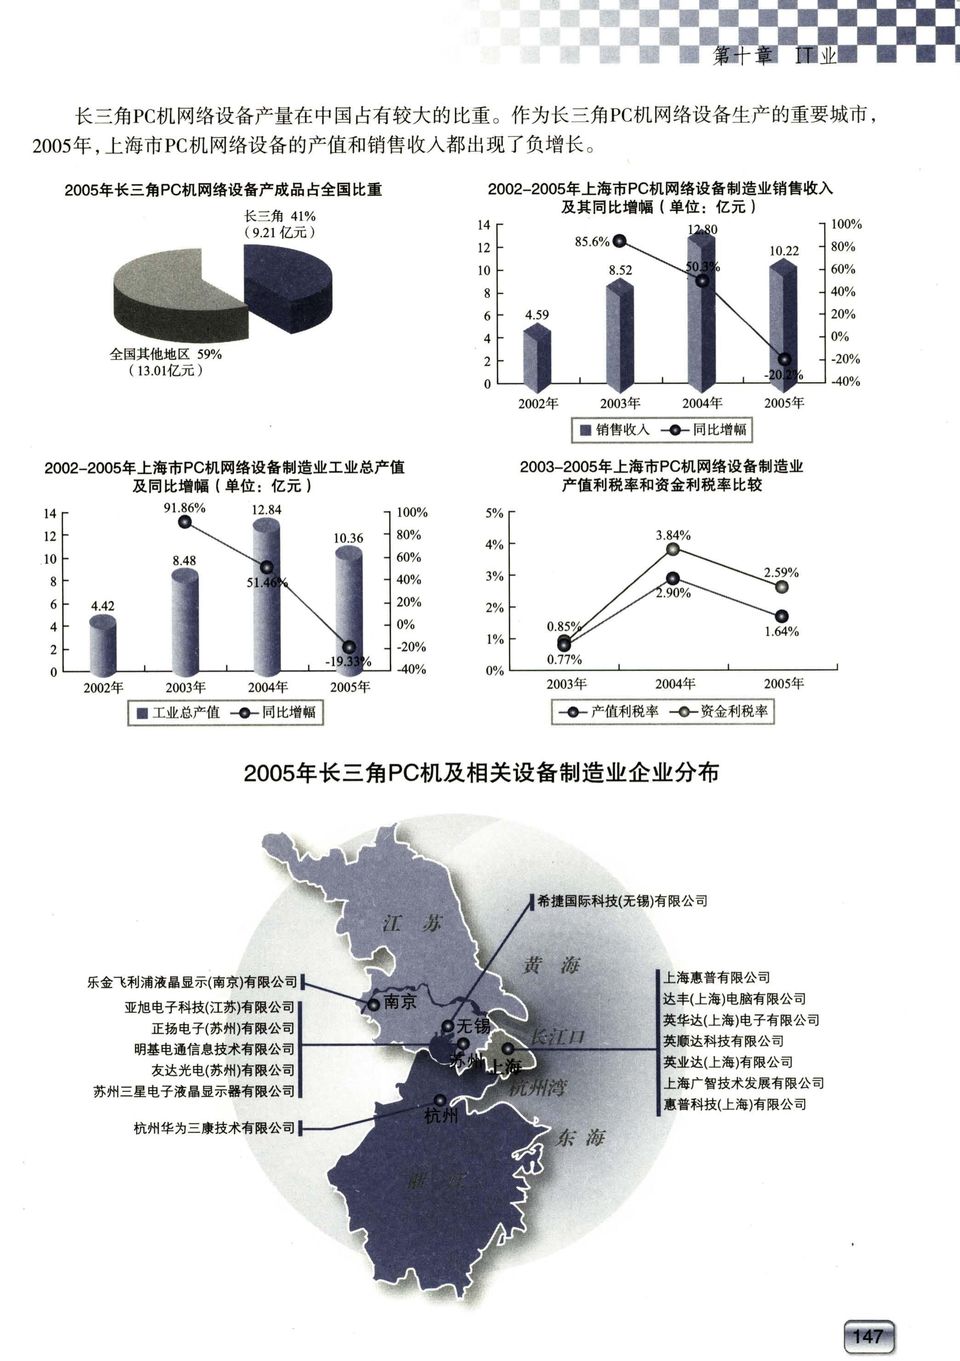 机 网 络 设 备 制 造 业 销 售 收 入 及 其 同 比 增 幅 ( 2002-2005 年 上 海 市 PC 机 网 络 设 备 制 造 业 工 业 总 产 值 及 同 比 增 幅 (